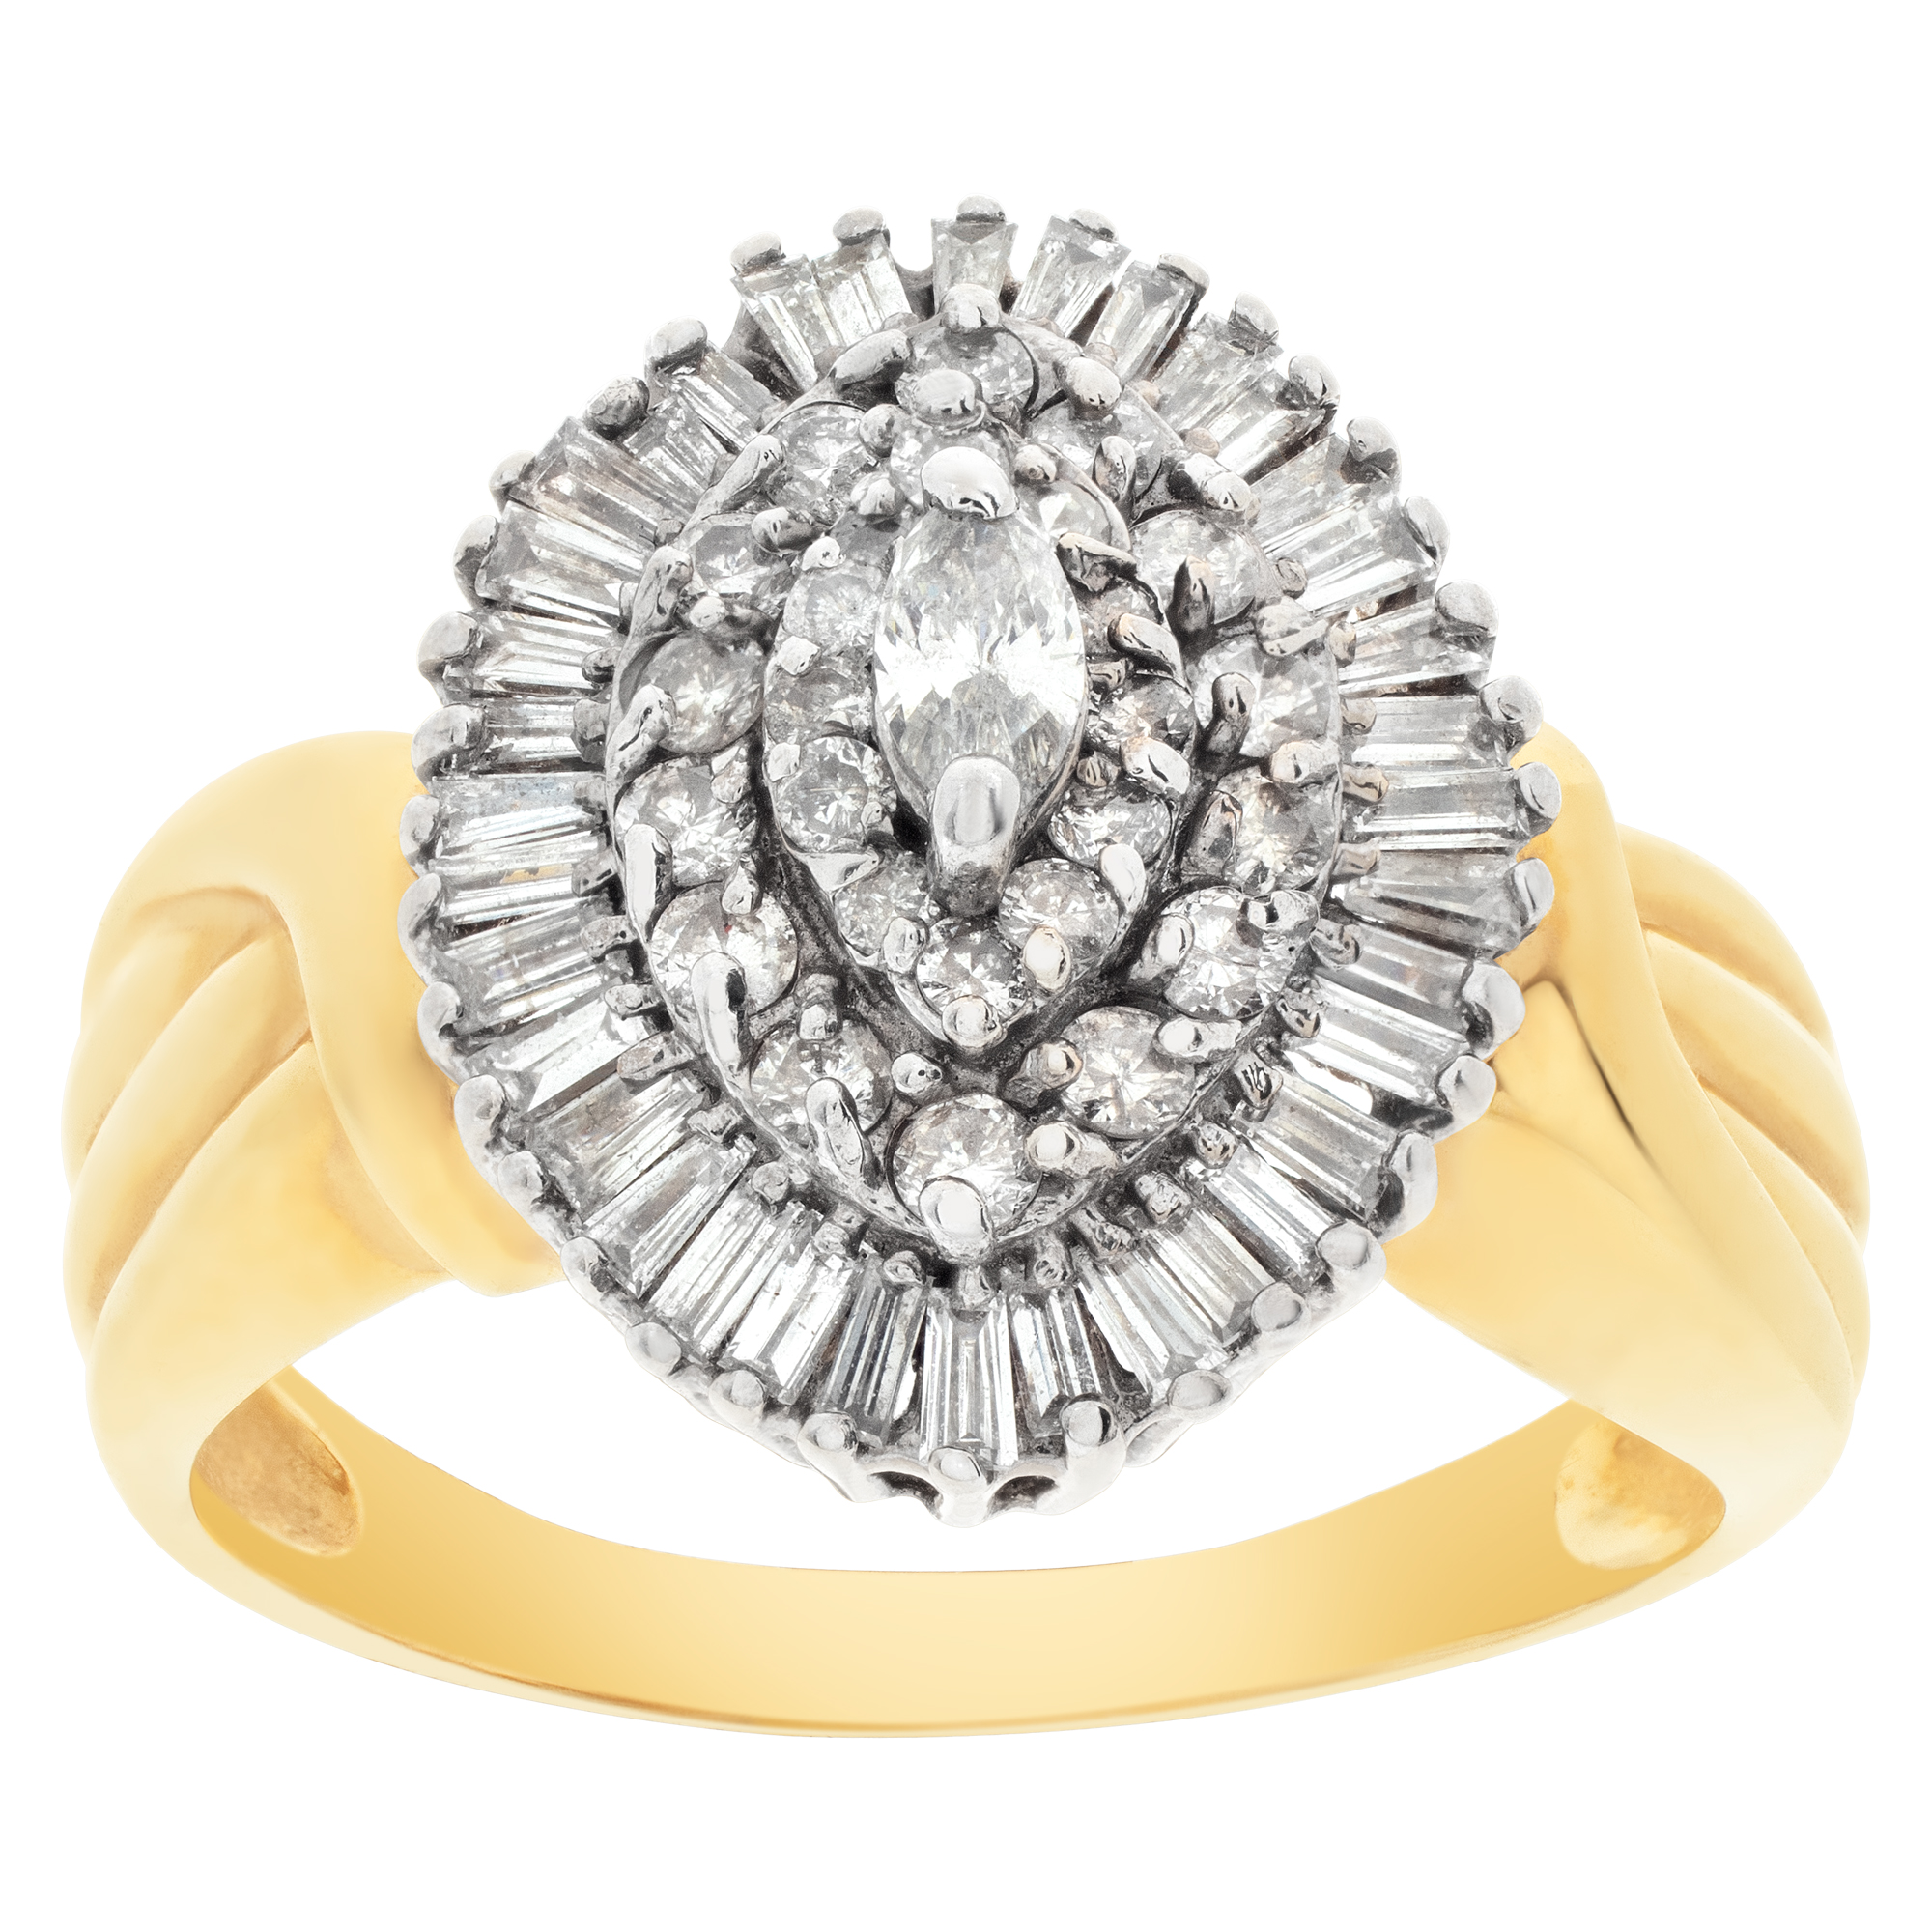 Ballerina diamond ring in 14k gold. 1.42 carats in diamonds. Size 9 image 1